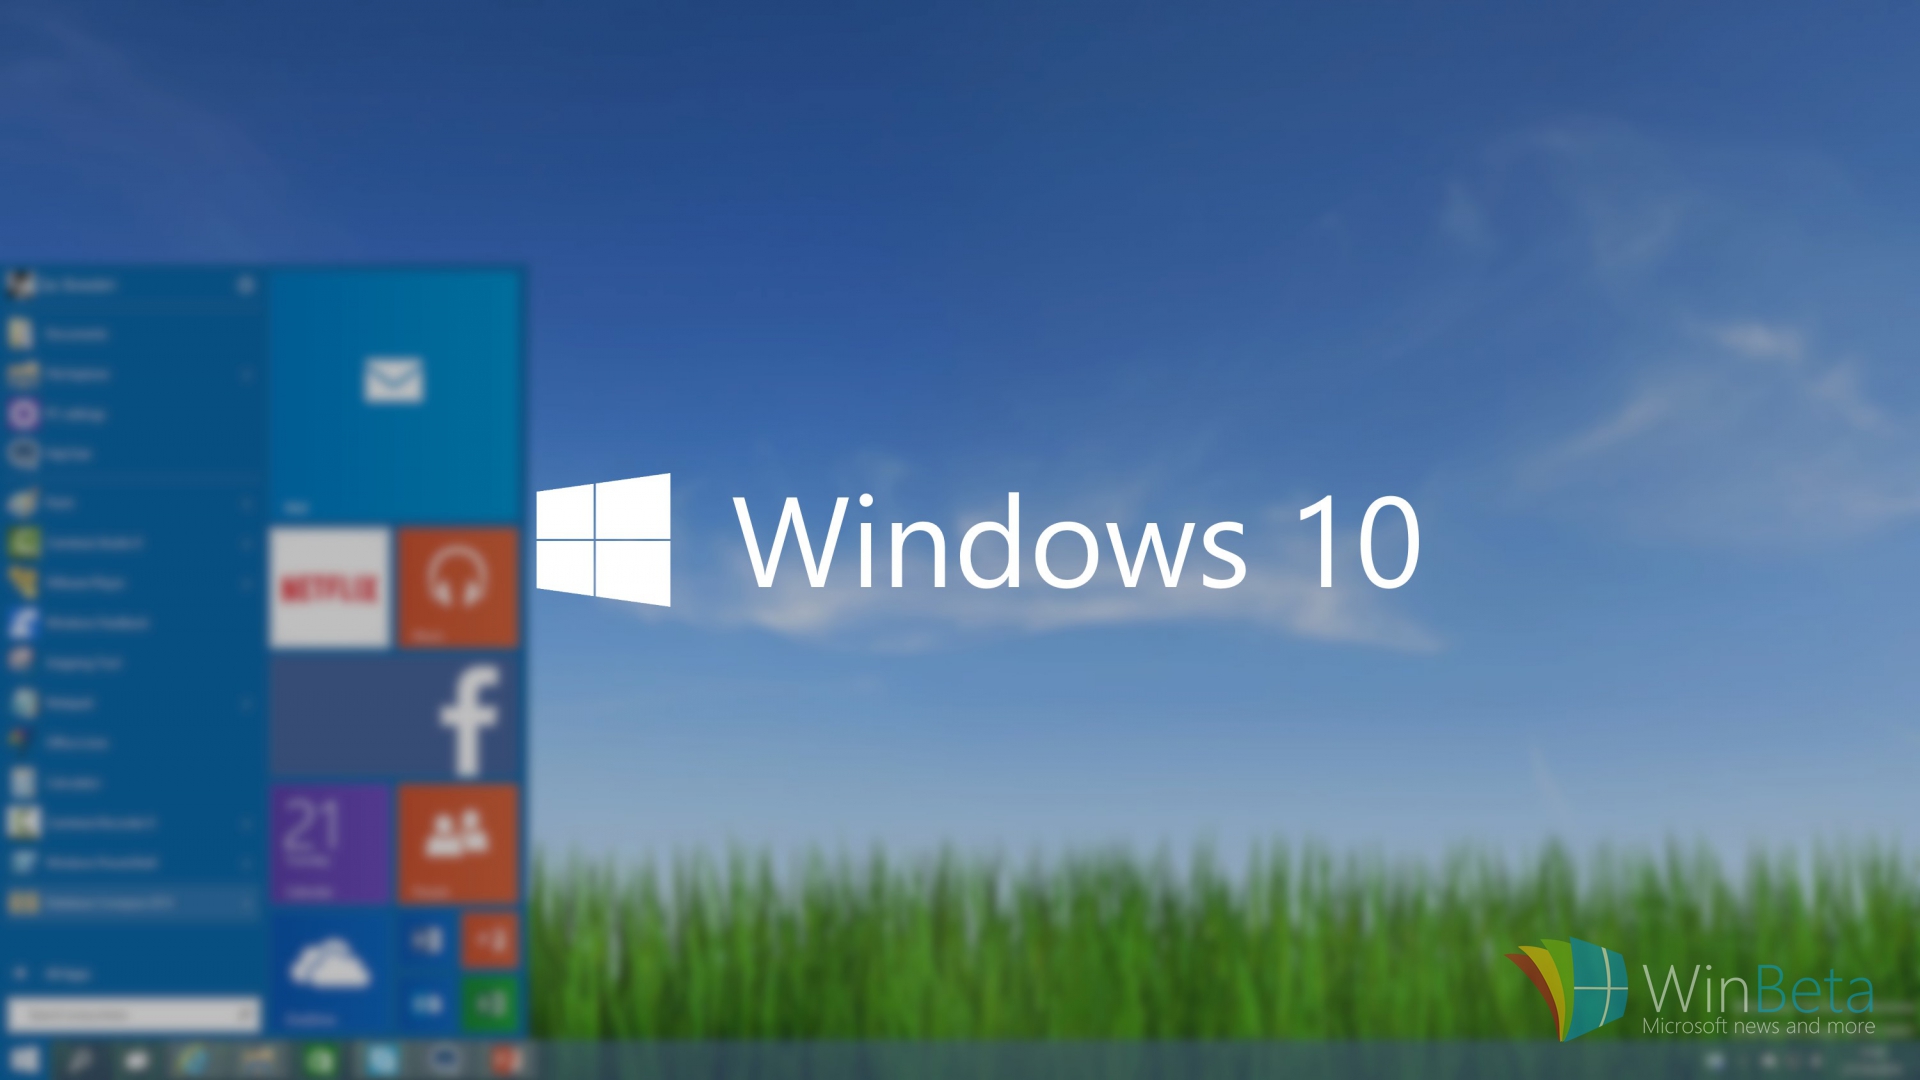 Hệ điều hành Windows 10 sẽ chính thức lên kệ vào 29/7/2015